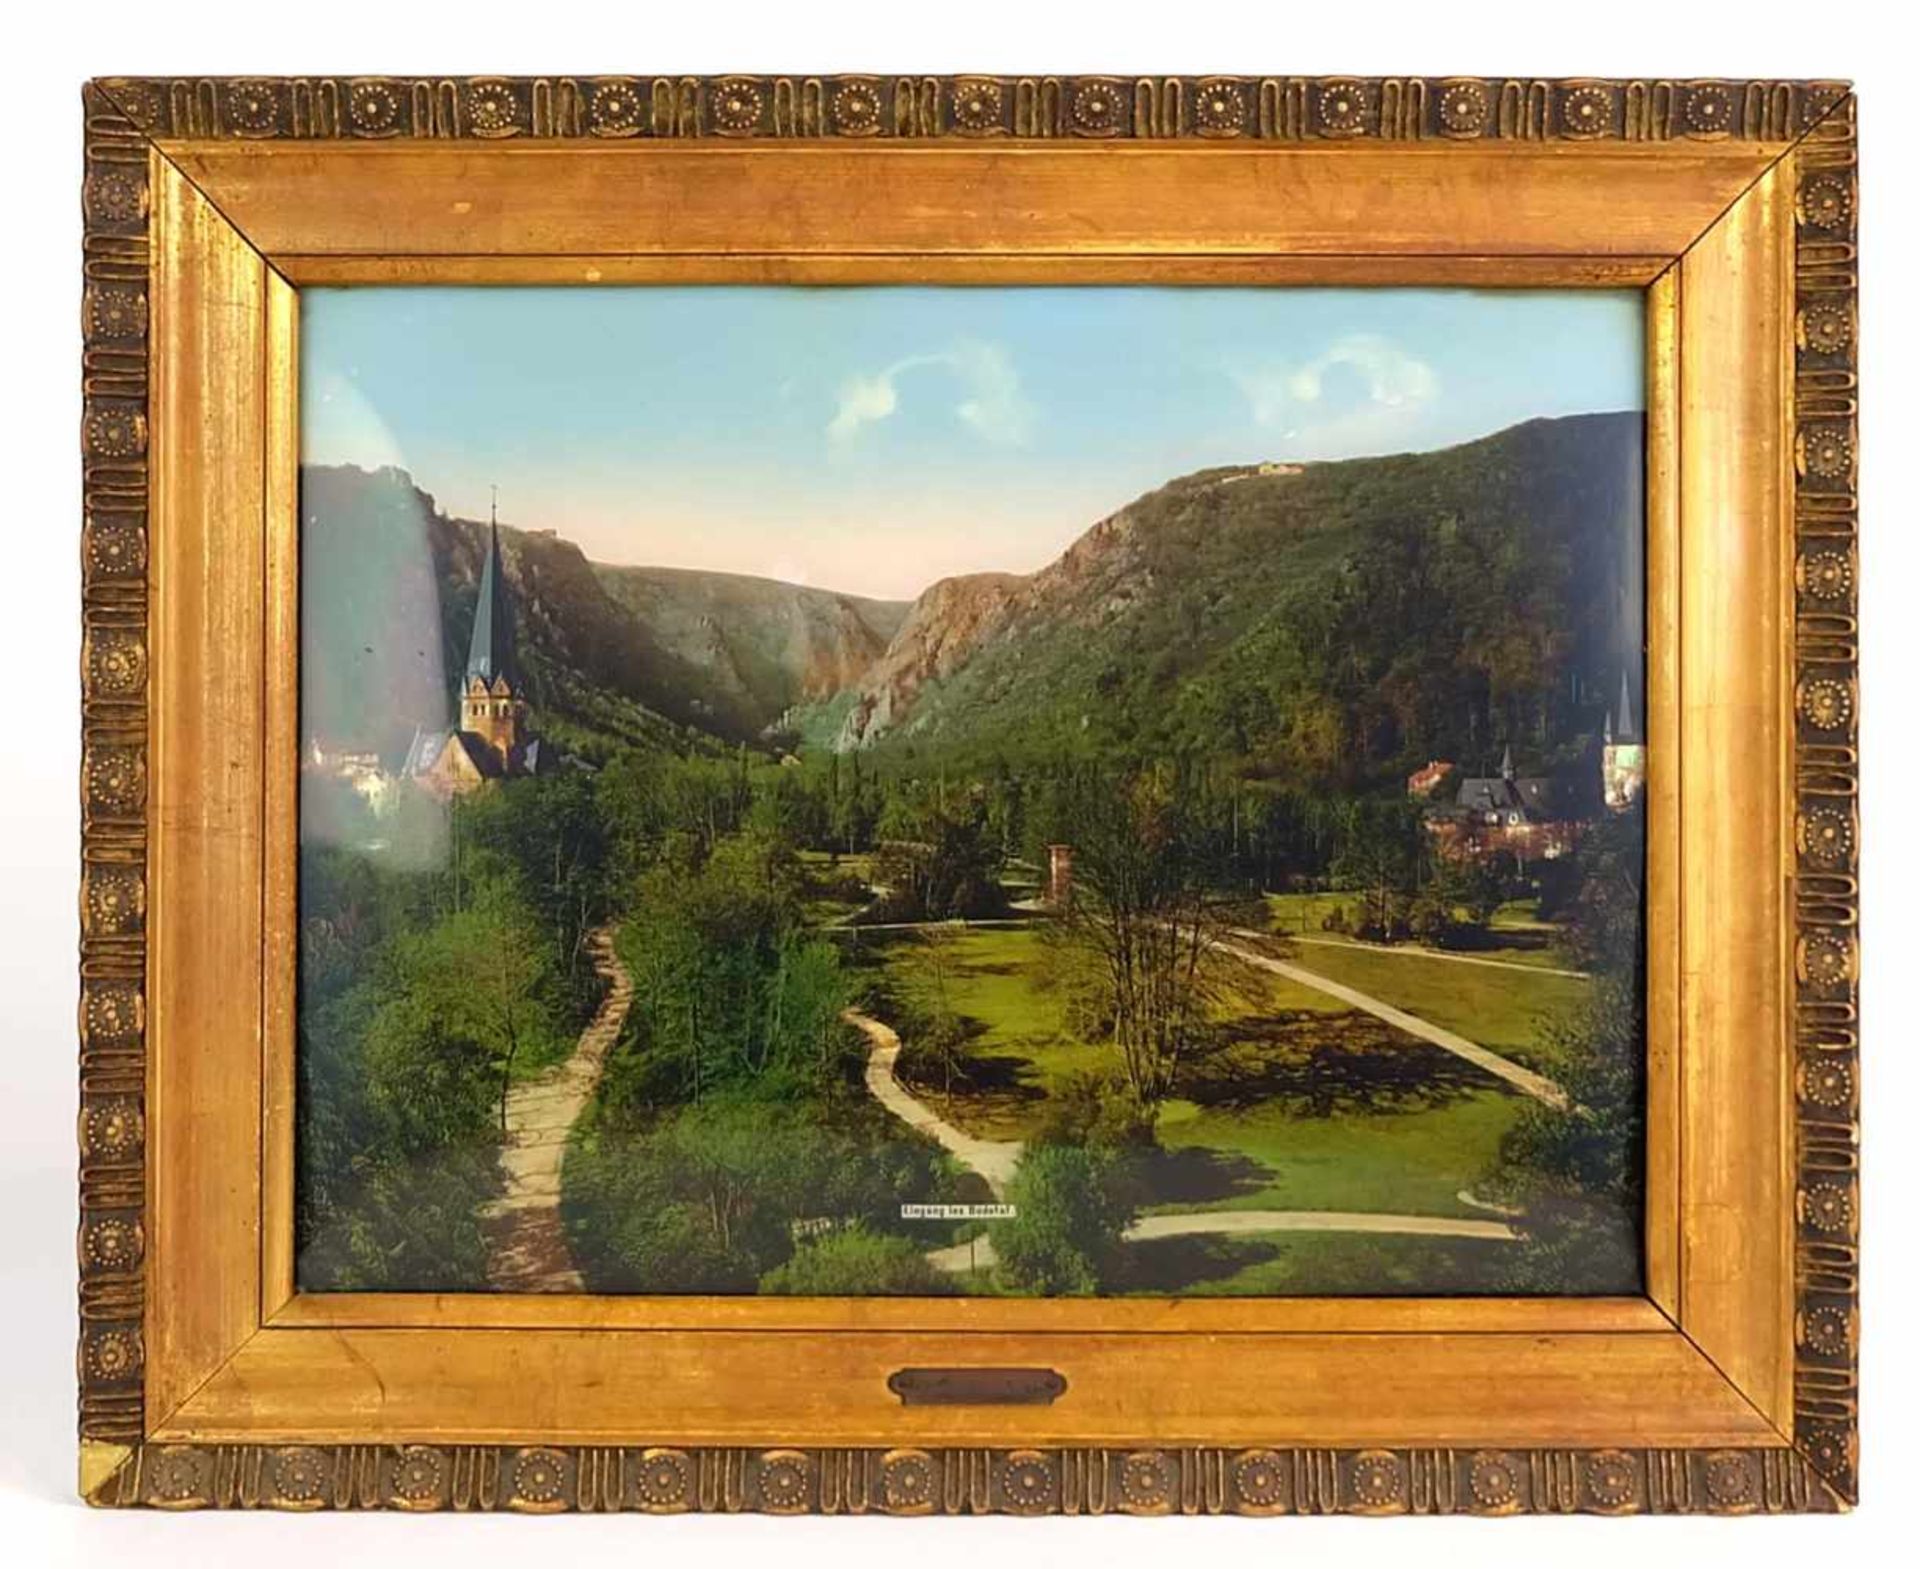 HINTERGLASBILD, 1910er/20er-Jahre, altcoloriert, gewölbtes Glas, Eingang ins Bodetal, 26 x 34,5